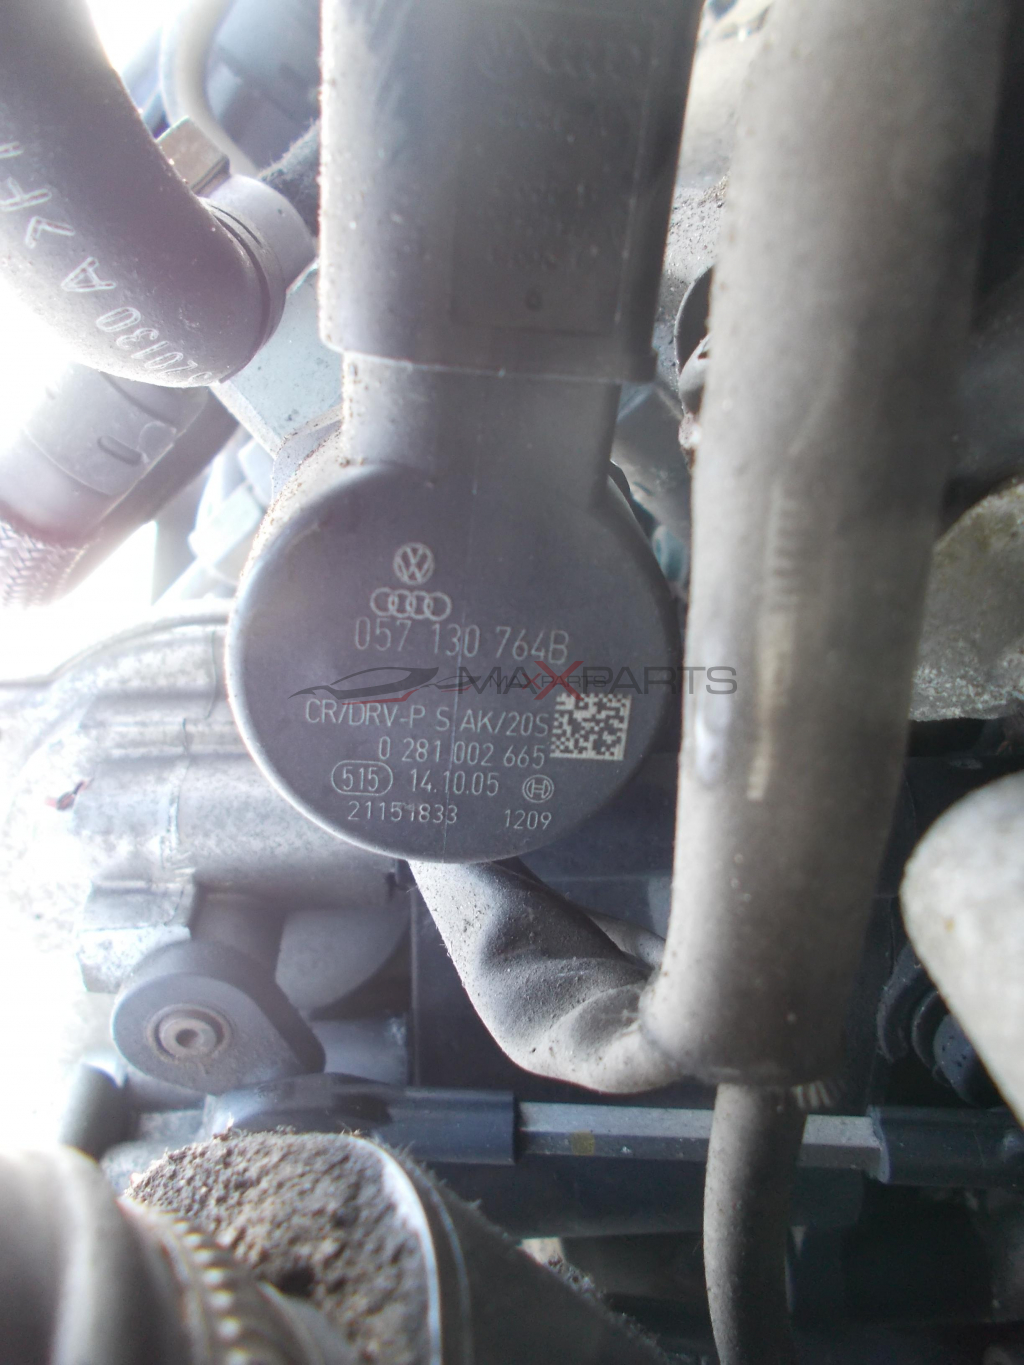 Регулатор налягане за Audi A6 4F 2.7TDI Pressure regulator 057130764B 0281002665